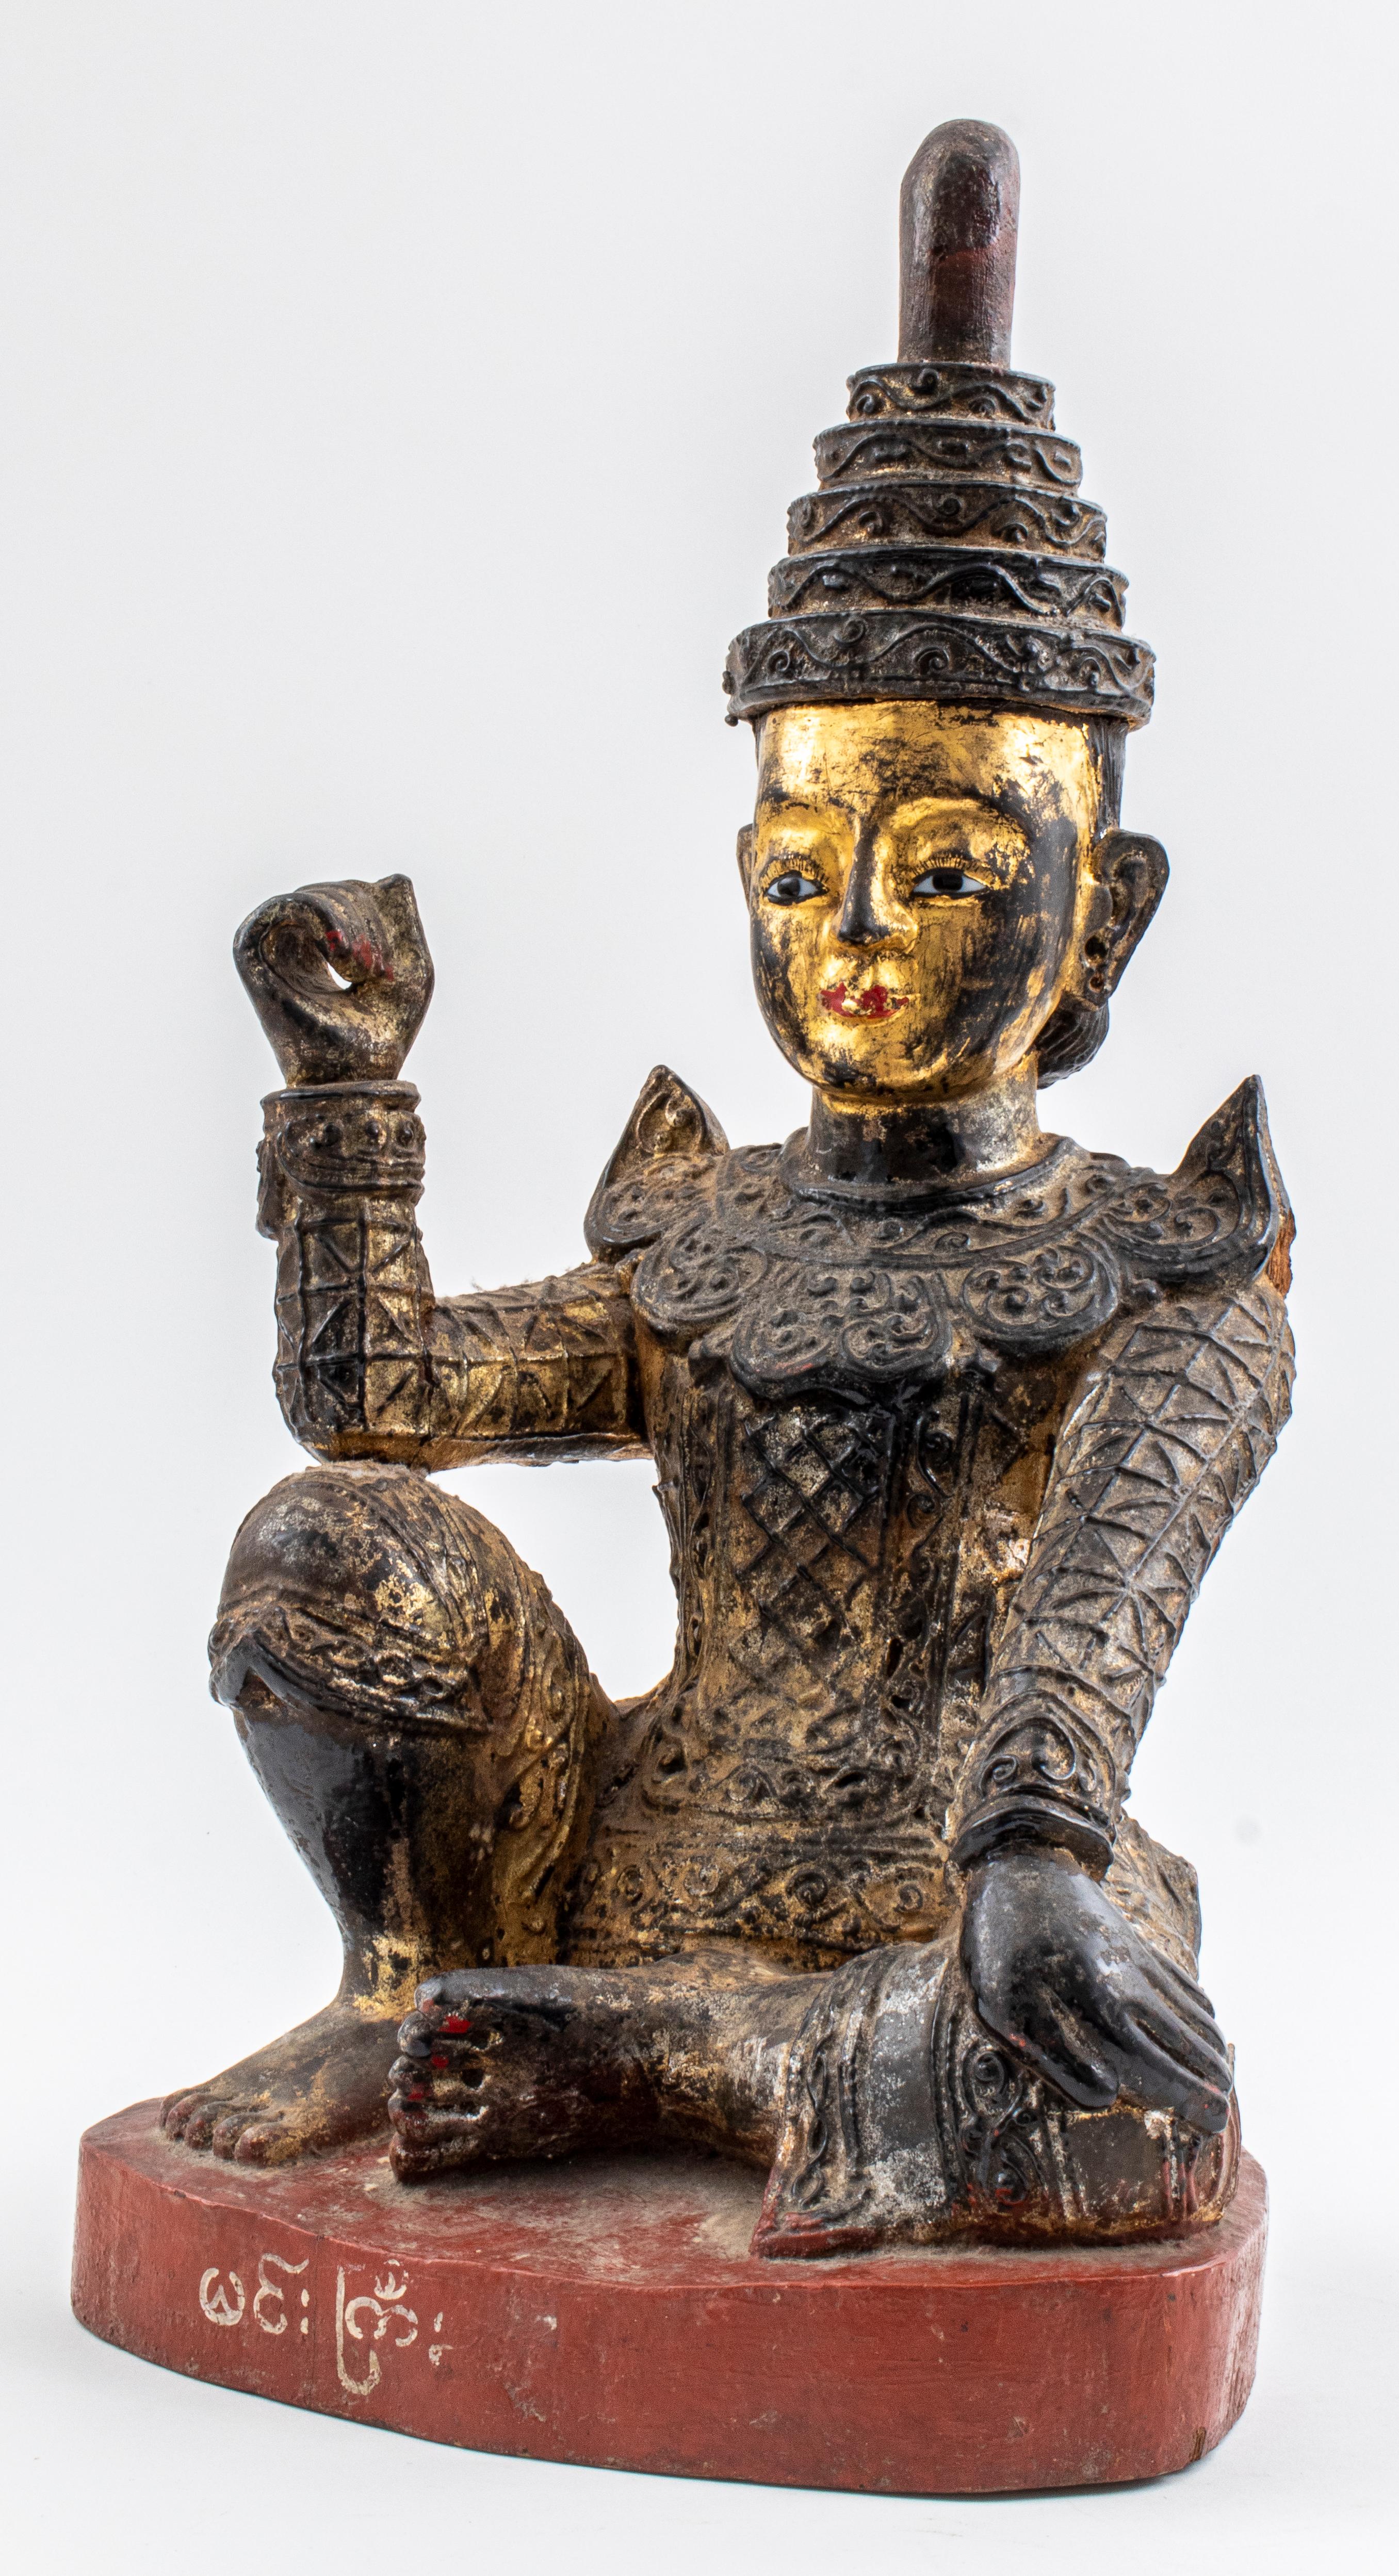 Statue ancienne en bois doré originaire de Birmanie représentant une figure de l'esprit NAT assise sur une base peinte en rouge avec des écritures effacées, le genou et le coude droits pliés et la main fermée pour former un cercle, ayant peut-être